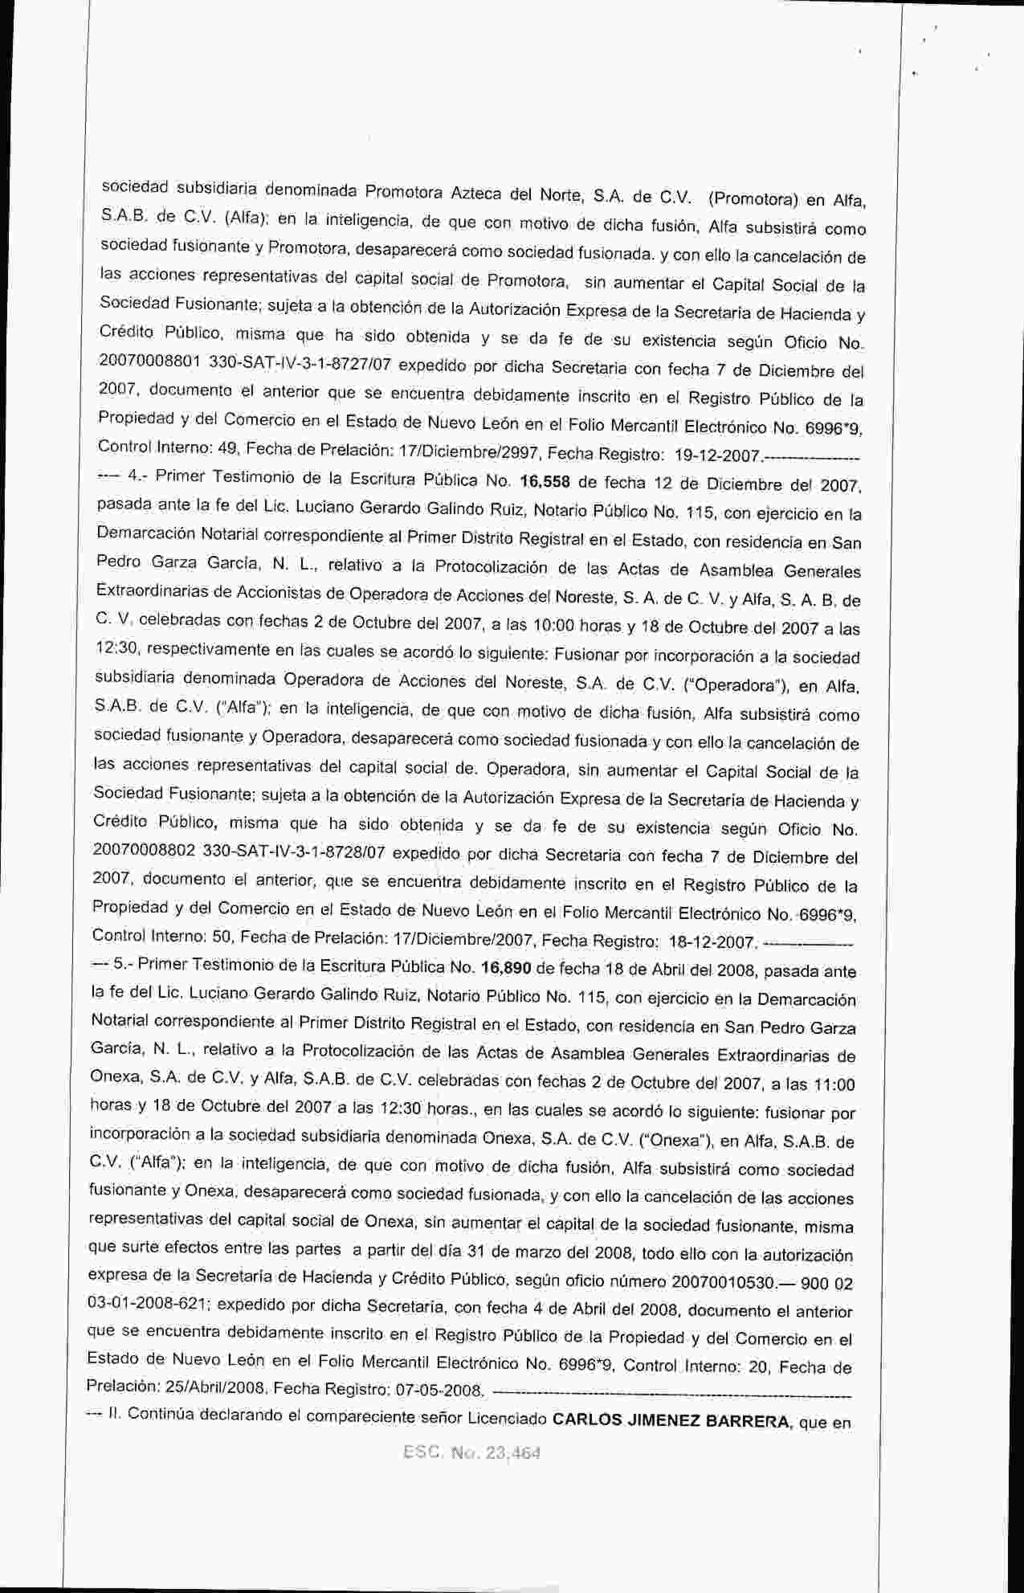 sociedad subsidiaria denominada Promotora Azteca del Norte, S. A. de C.V. ( Promotora) en Alfa, S.A. B. de C. V.